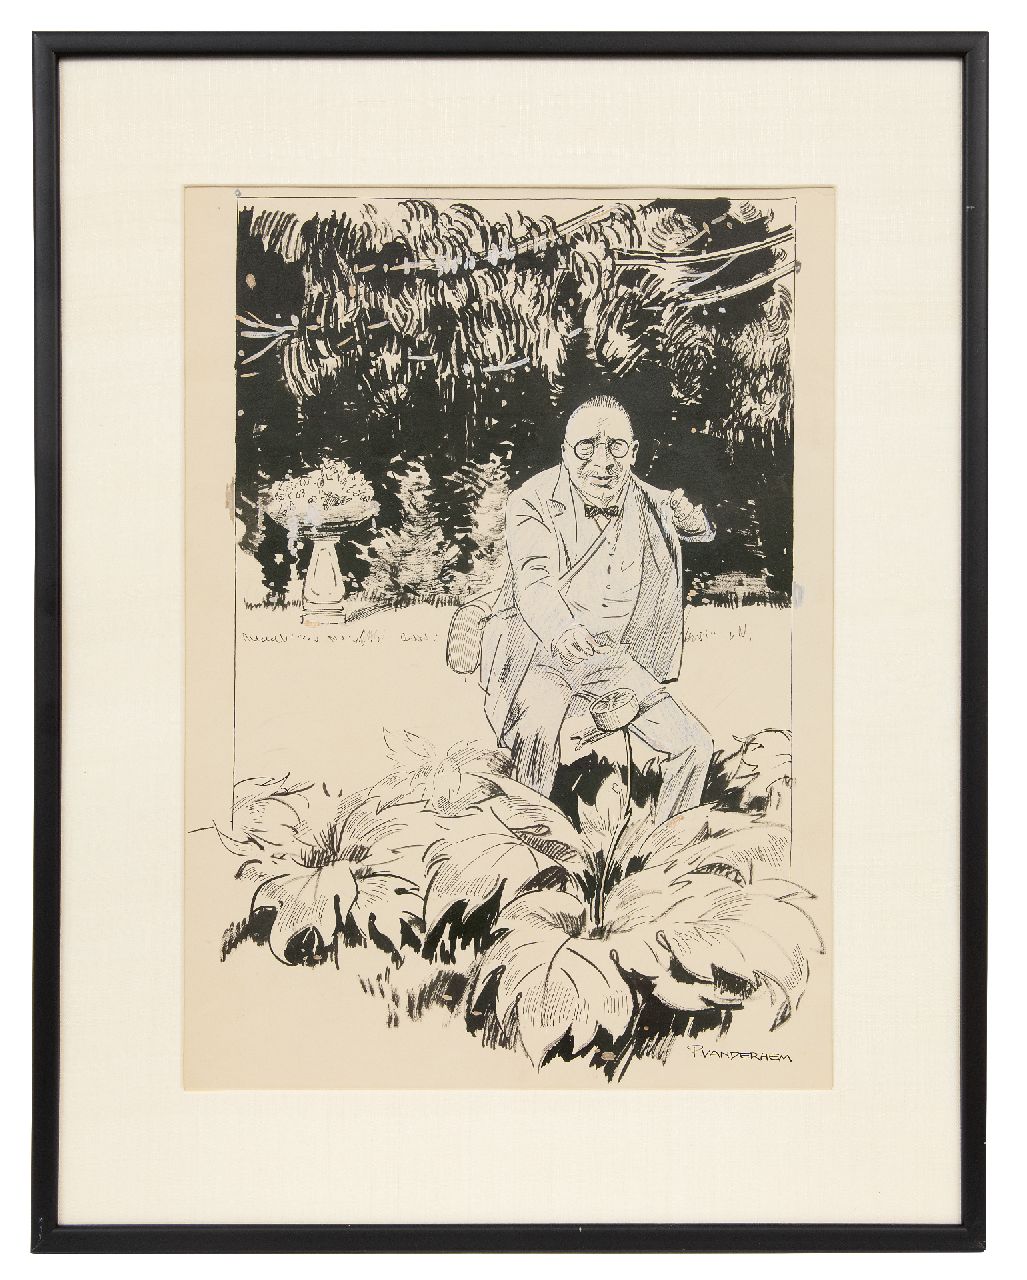 Hem P. van der | Pieter 'Piet' van der Hem | Aquarellen en tekeningen te koop aangeboden | De verboden bloem, inkt en krijt op papier 50,0 x 35,0 cm, gesigneerd rechtsonder